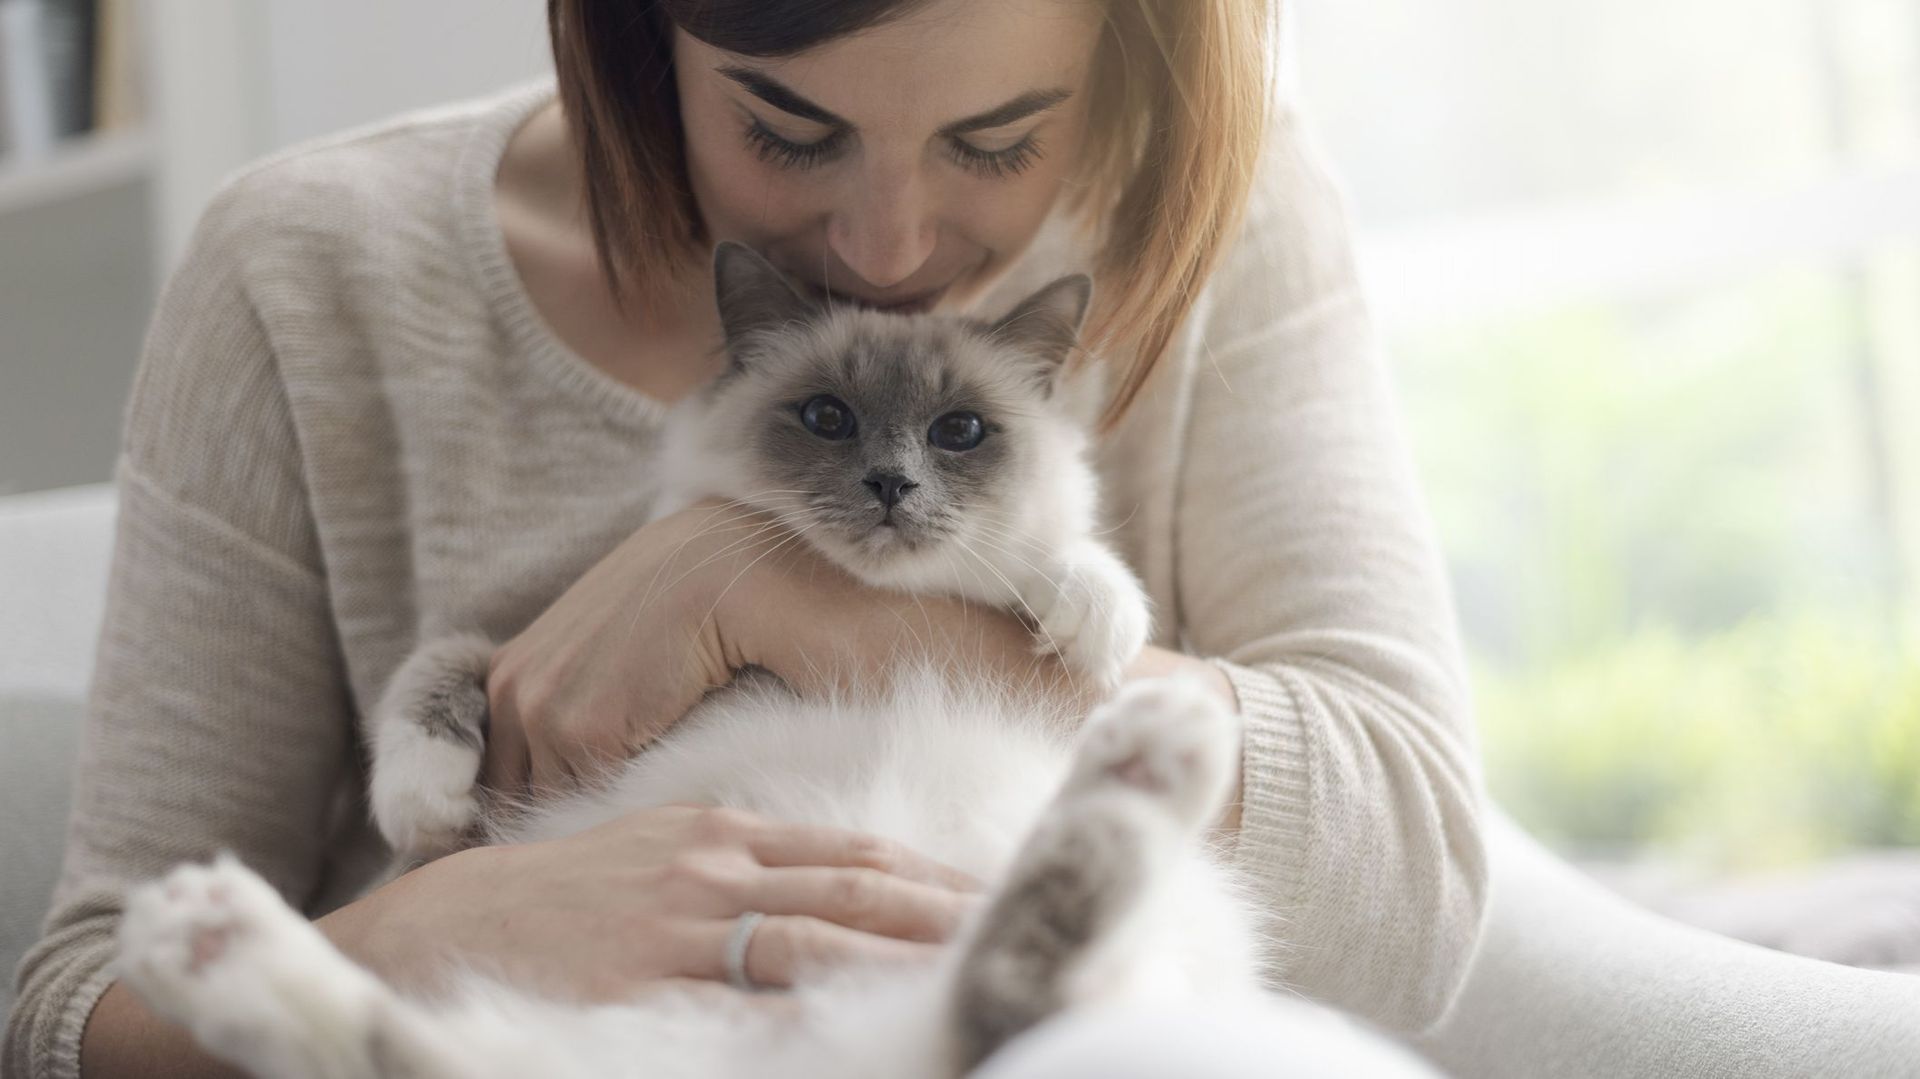 Jouer de la musique 'cat-friendly' calmerait les chats chez le vétérinaire, selon une étude